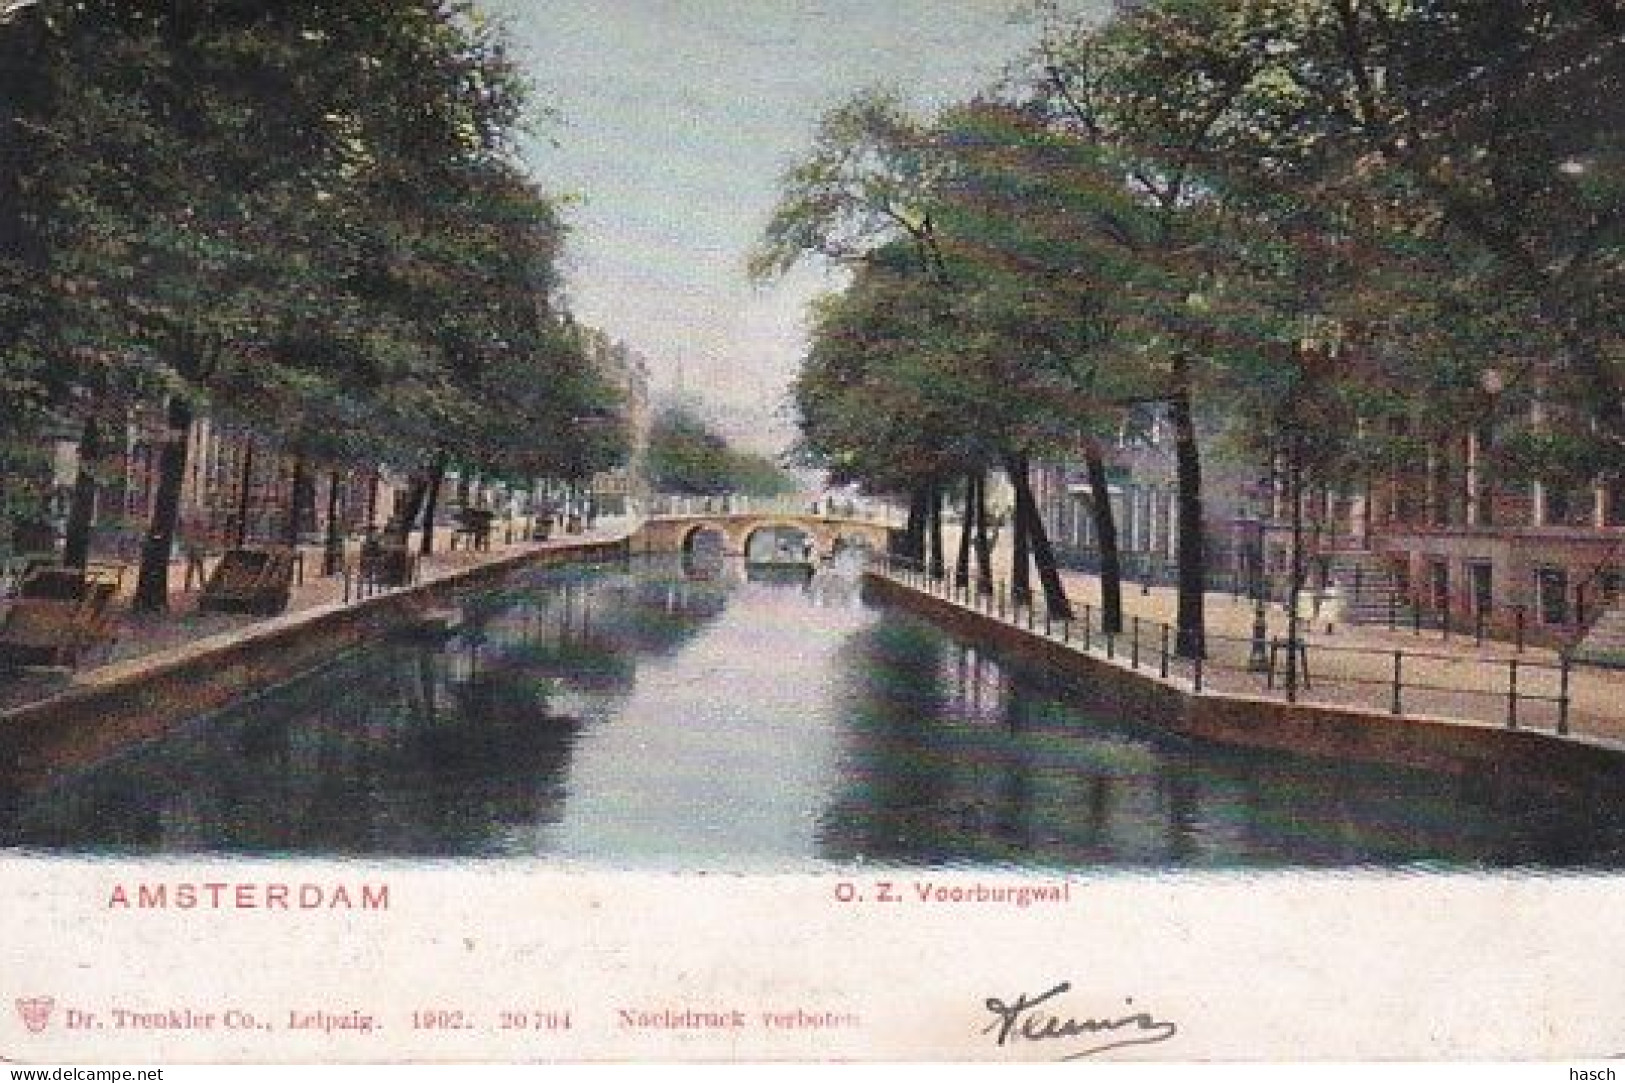 1850	138	Amsterdam, O. Z. Voorburgwal - Amsterdam